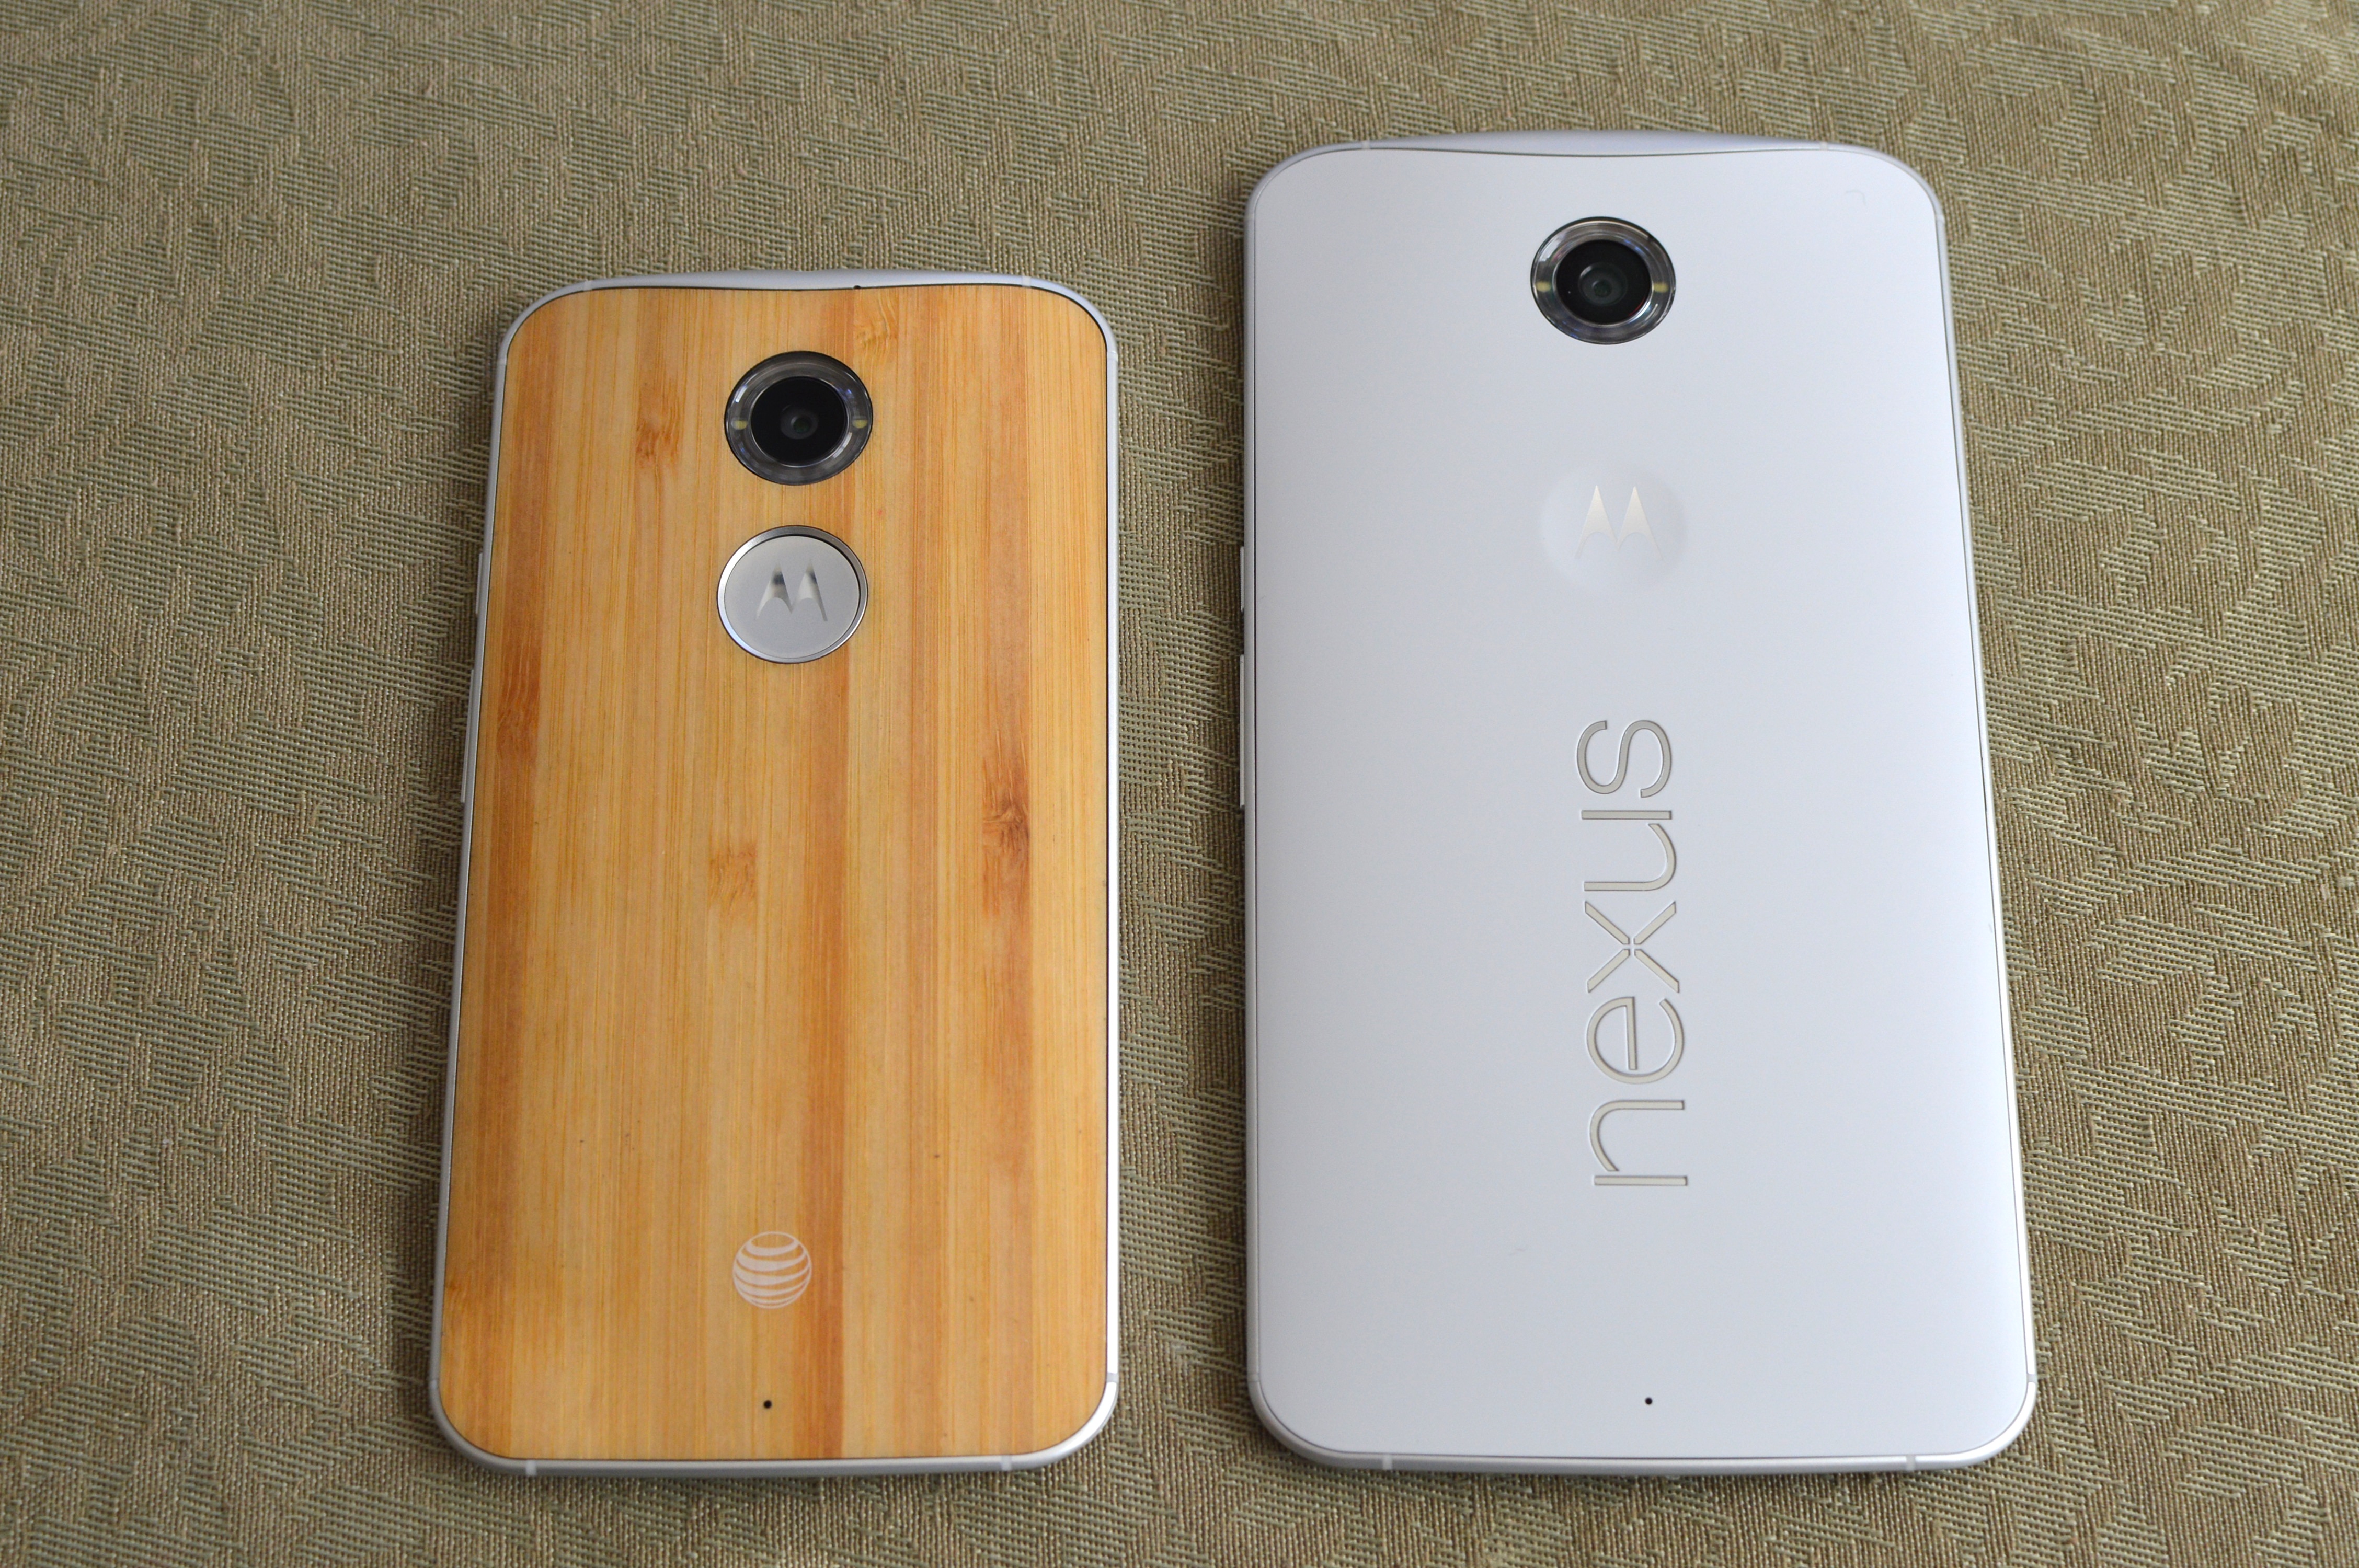 Startpunt Postbode schommel Nexus 6 vs Moto X 2014: Size Comparison